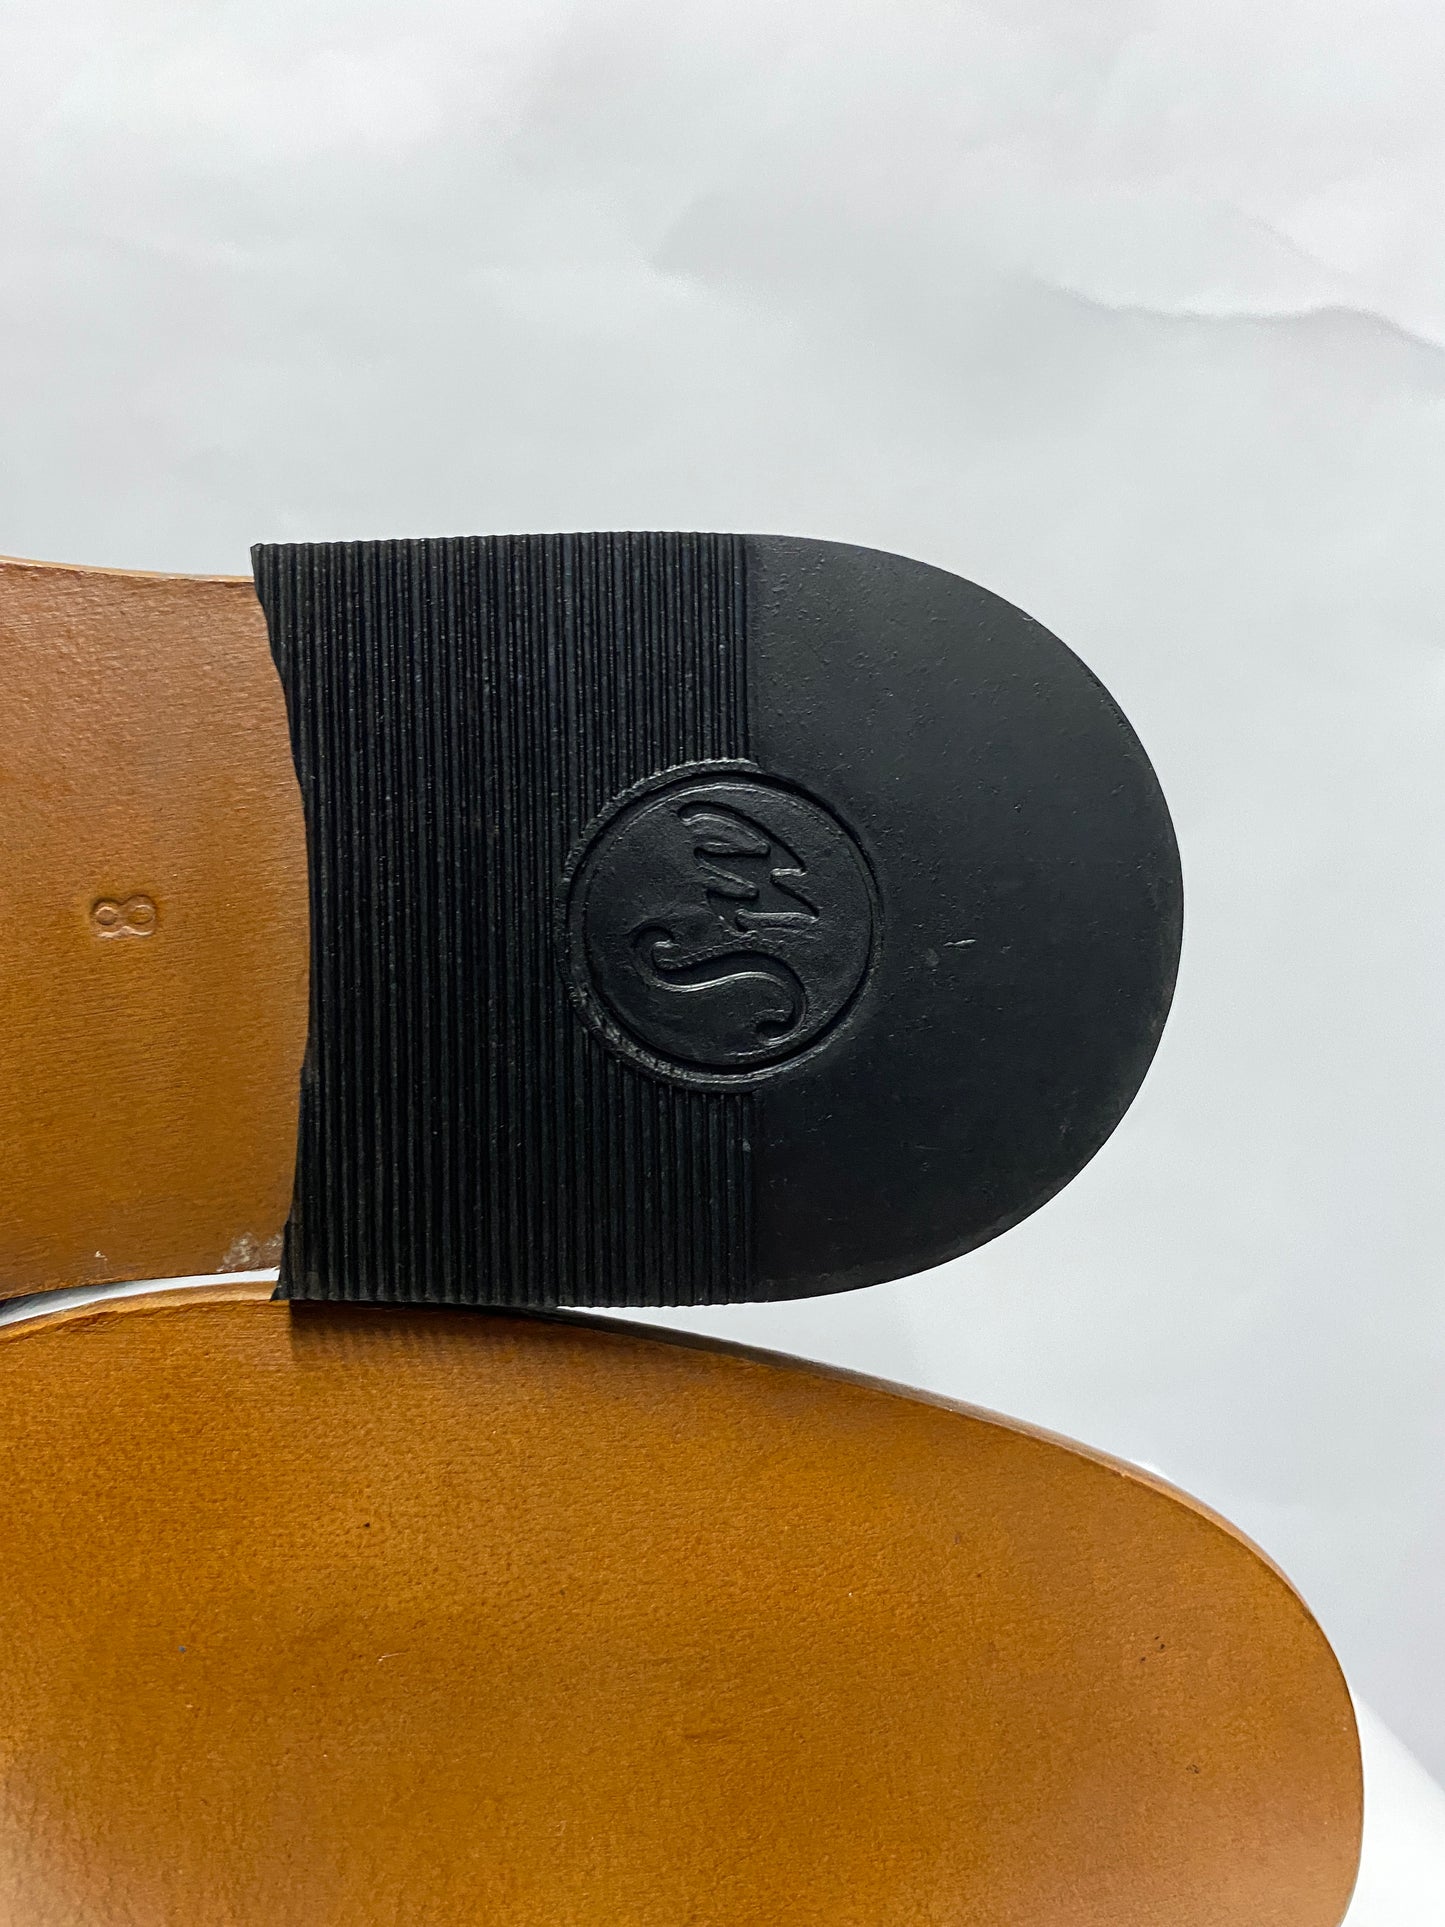 Samuel Windsor Black Leather Penny Loafer Slip On 8